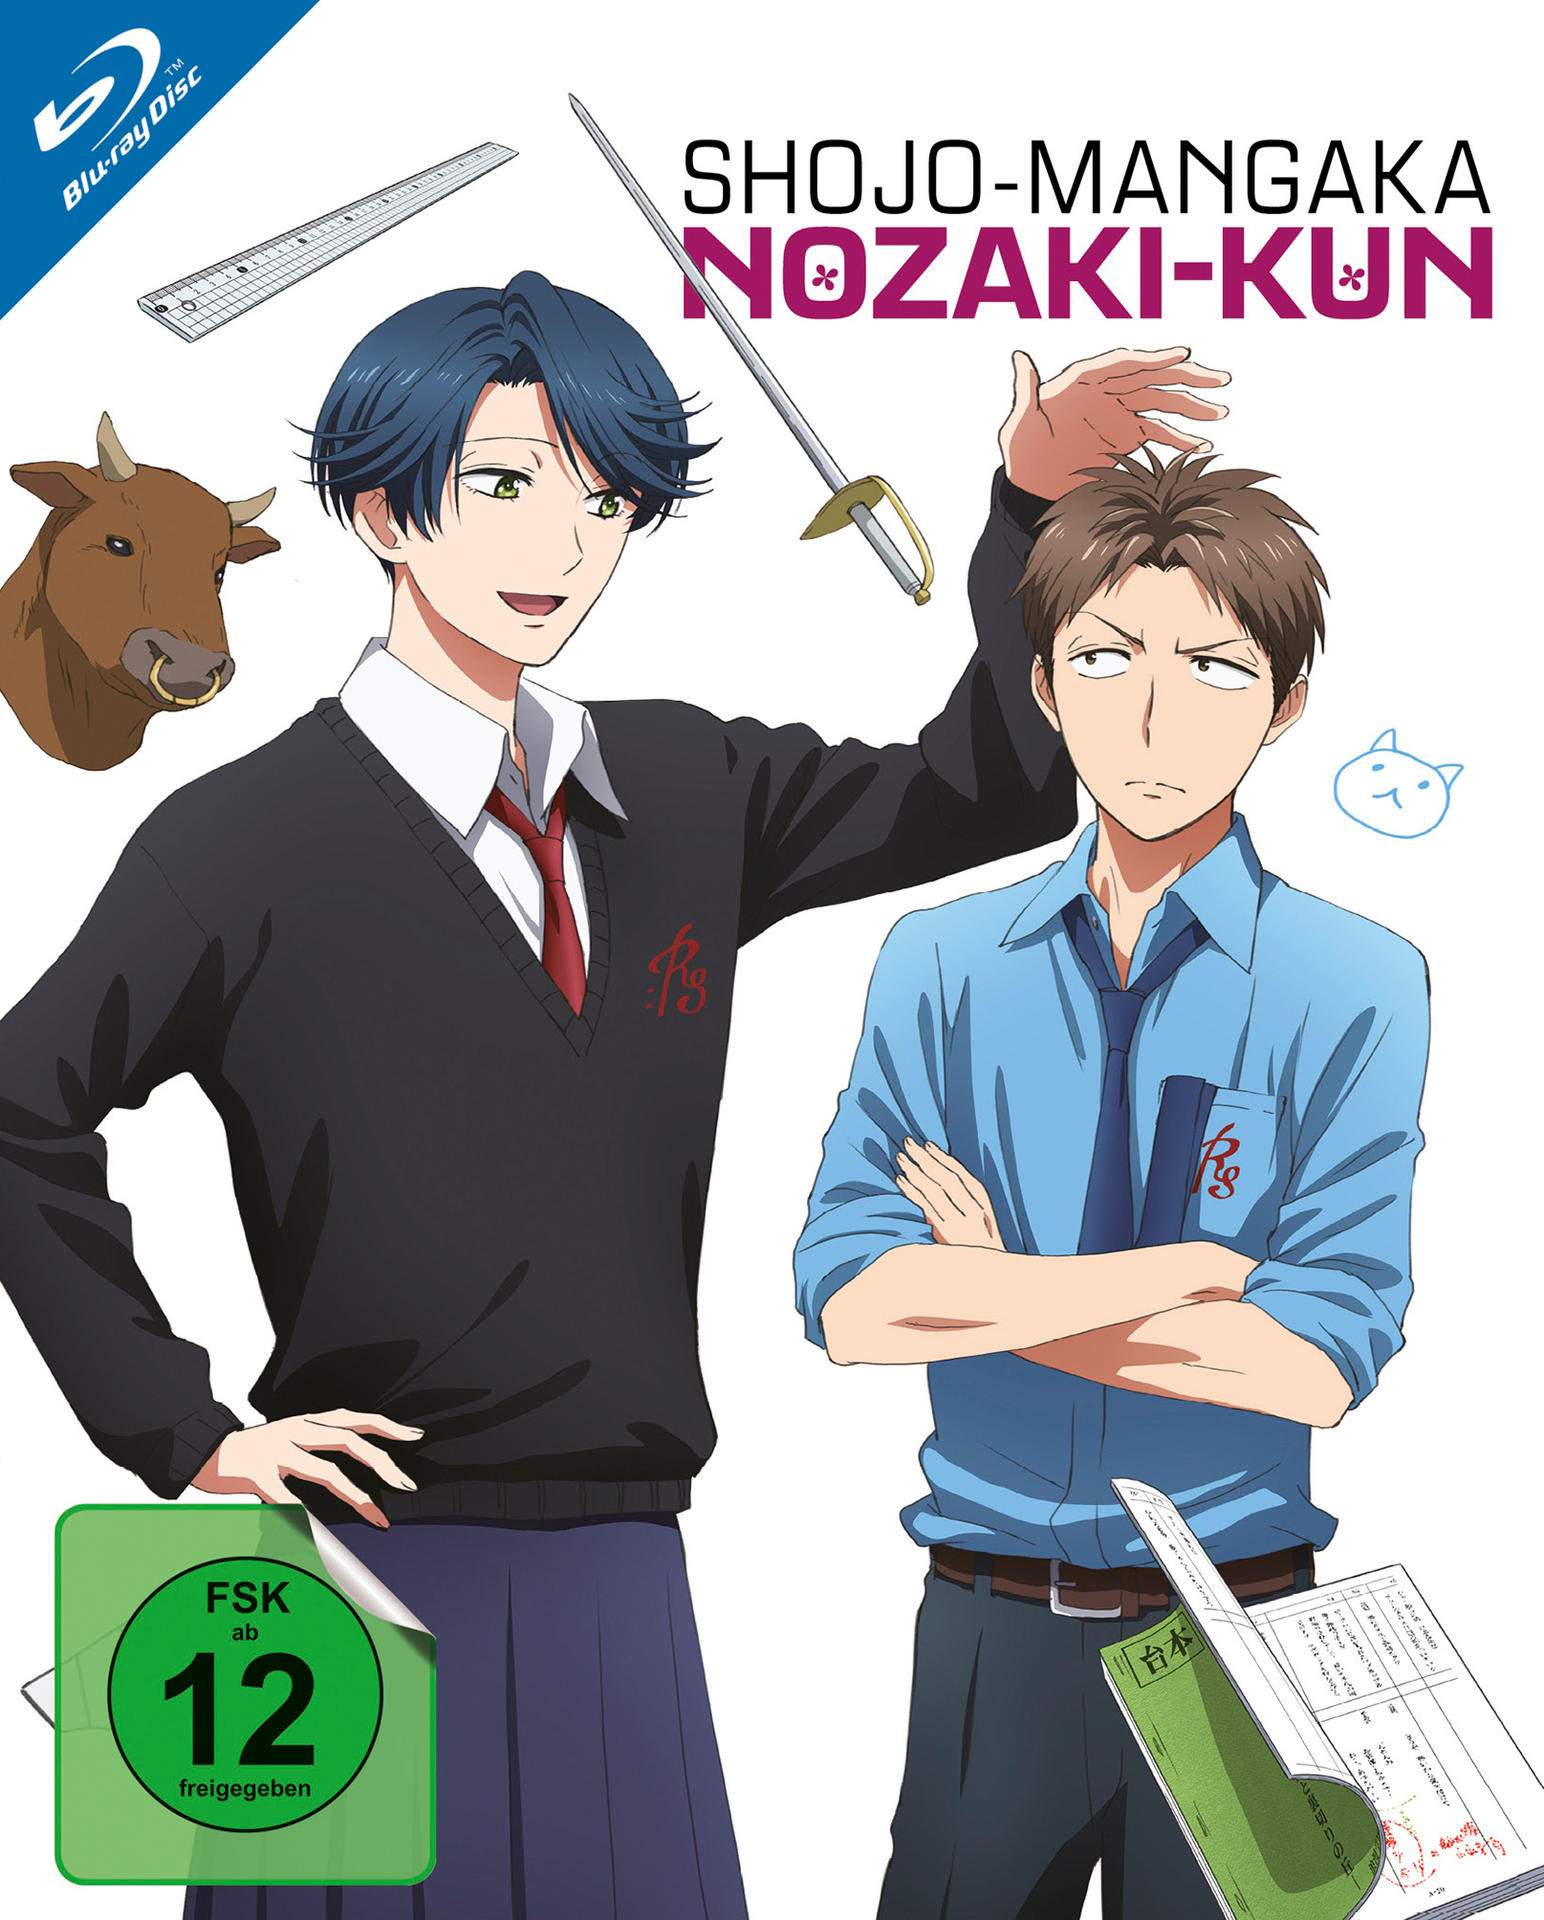 Vol. (Ep. 2 Shojo-Mangaka 5-8) Nozaki-Kun Blu-ray